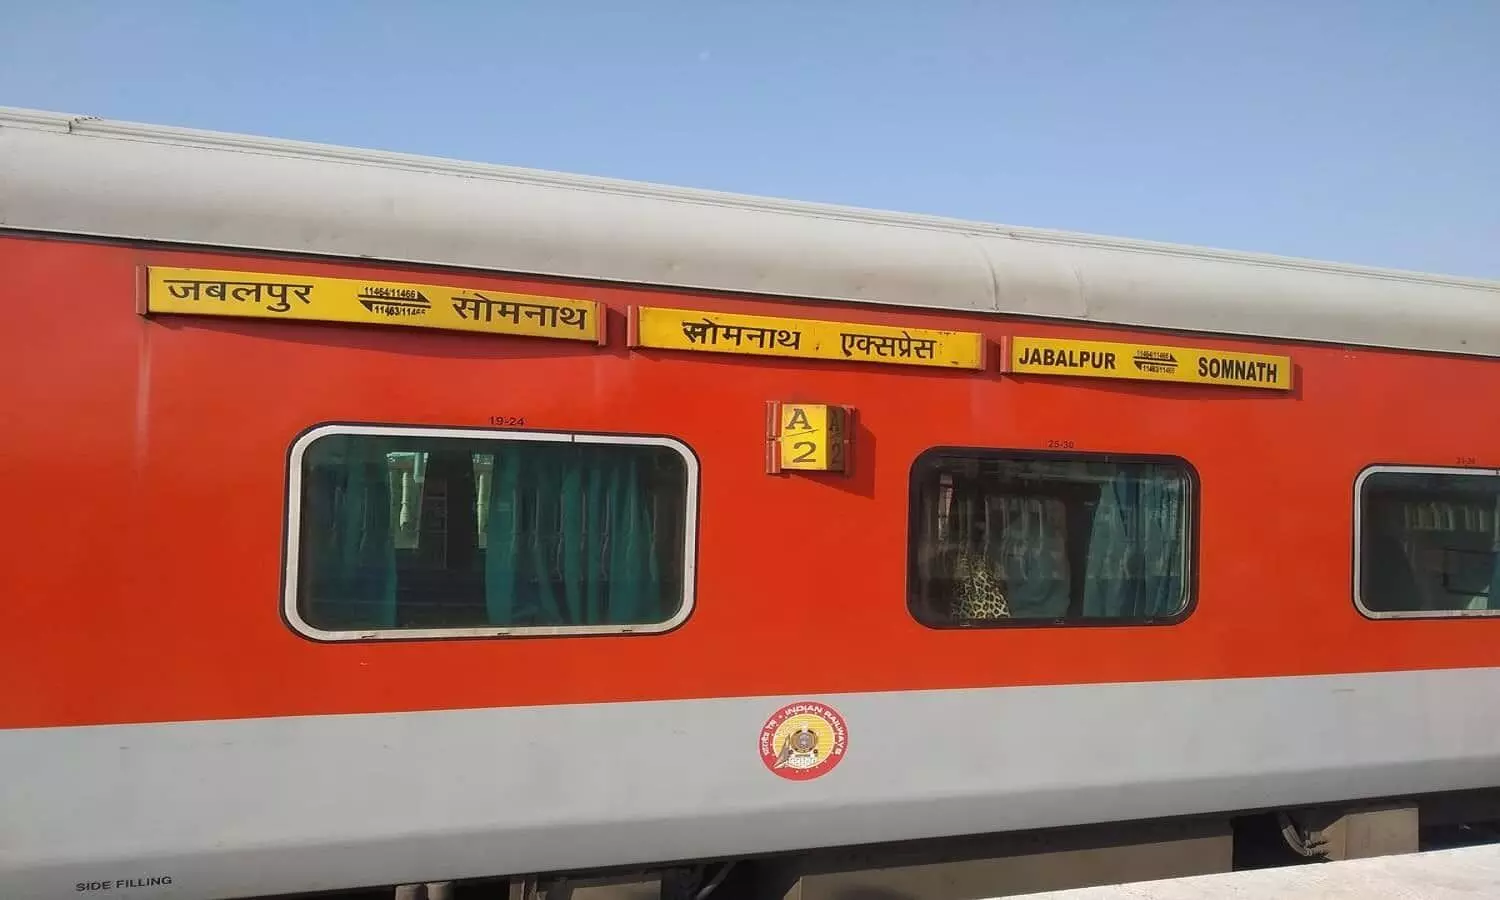 Jabalpur-Somnath Express को लेकर आई बड़ी अपडेट, अब इस स्टेशन पर भी रुकेगी ट्रेन